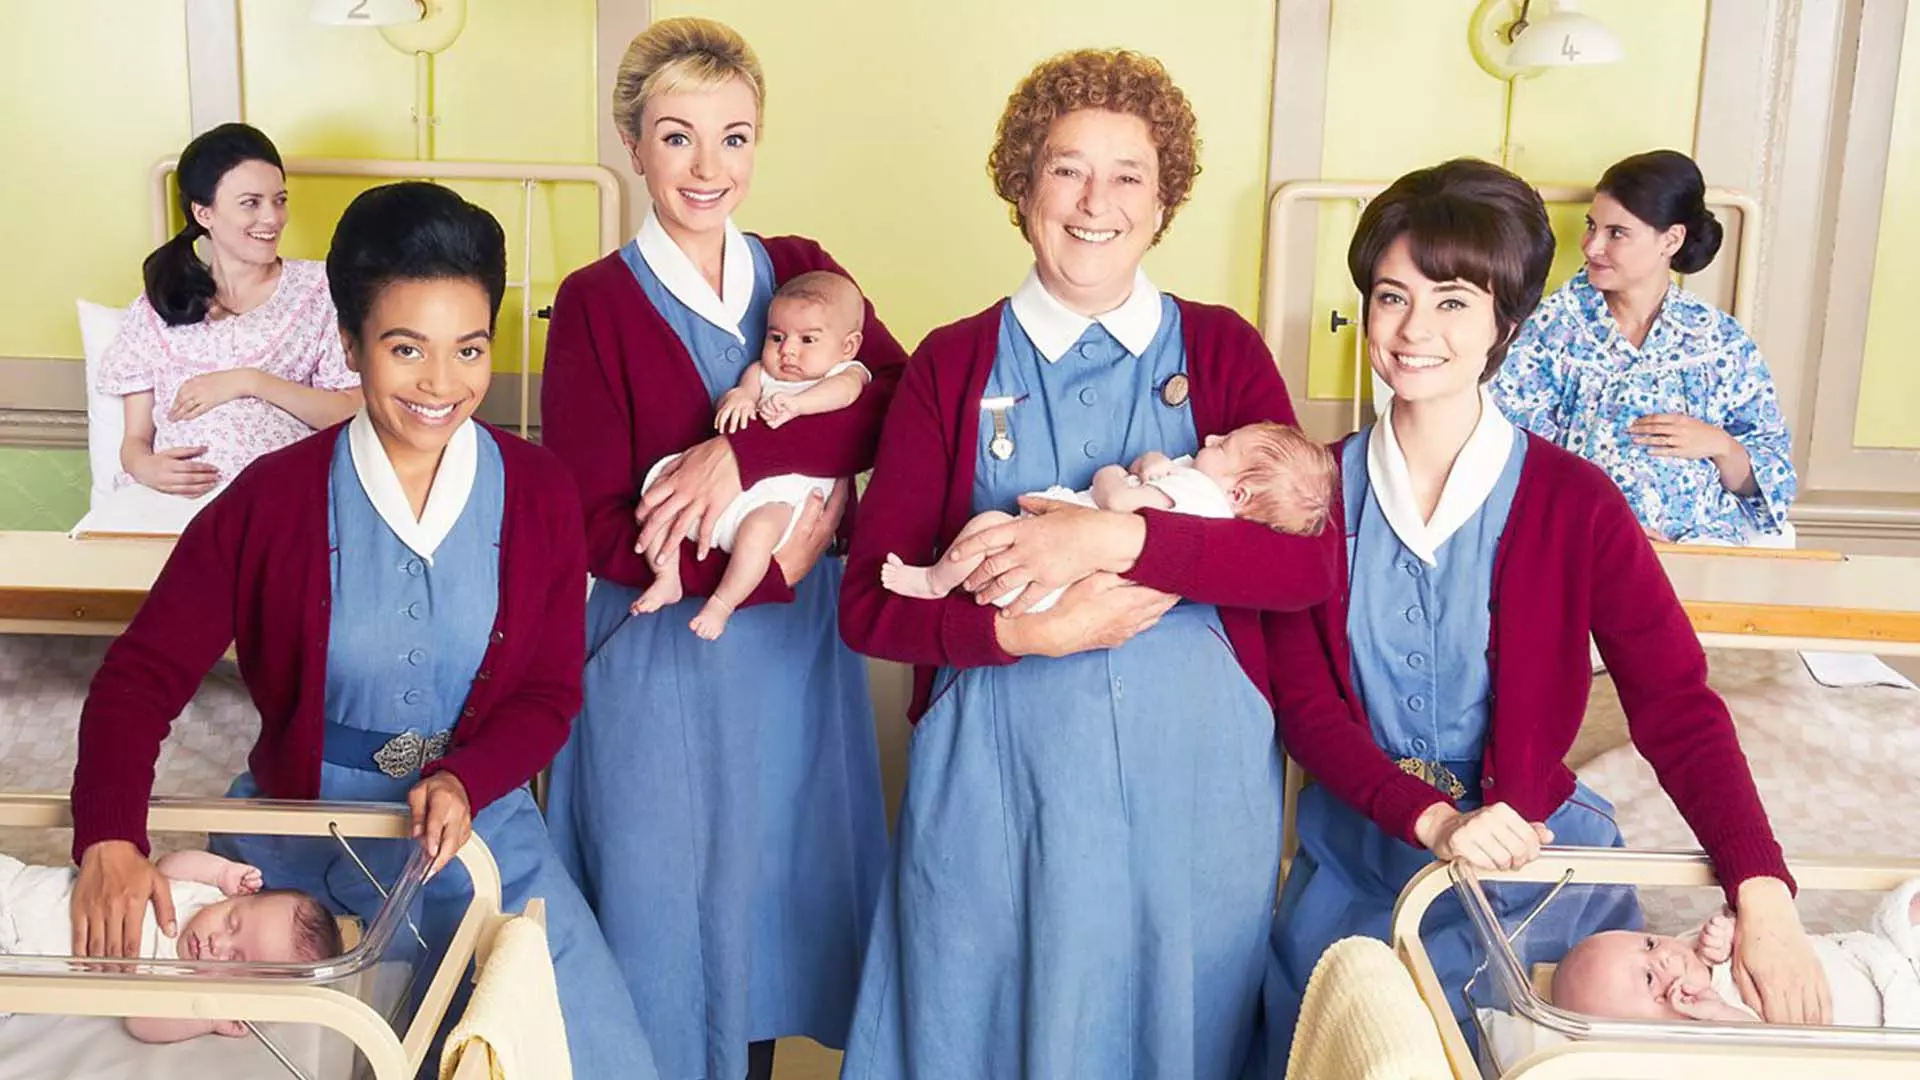 ماماهای سریال Call The Midwife به همراه نوزادهایی در آغوش